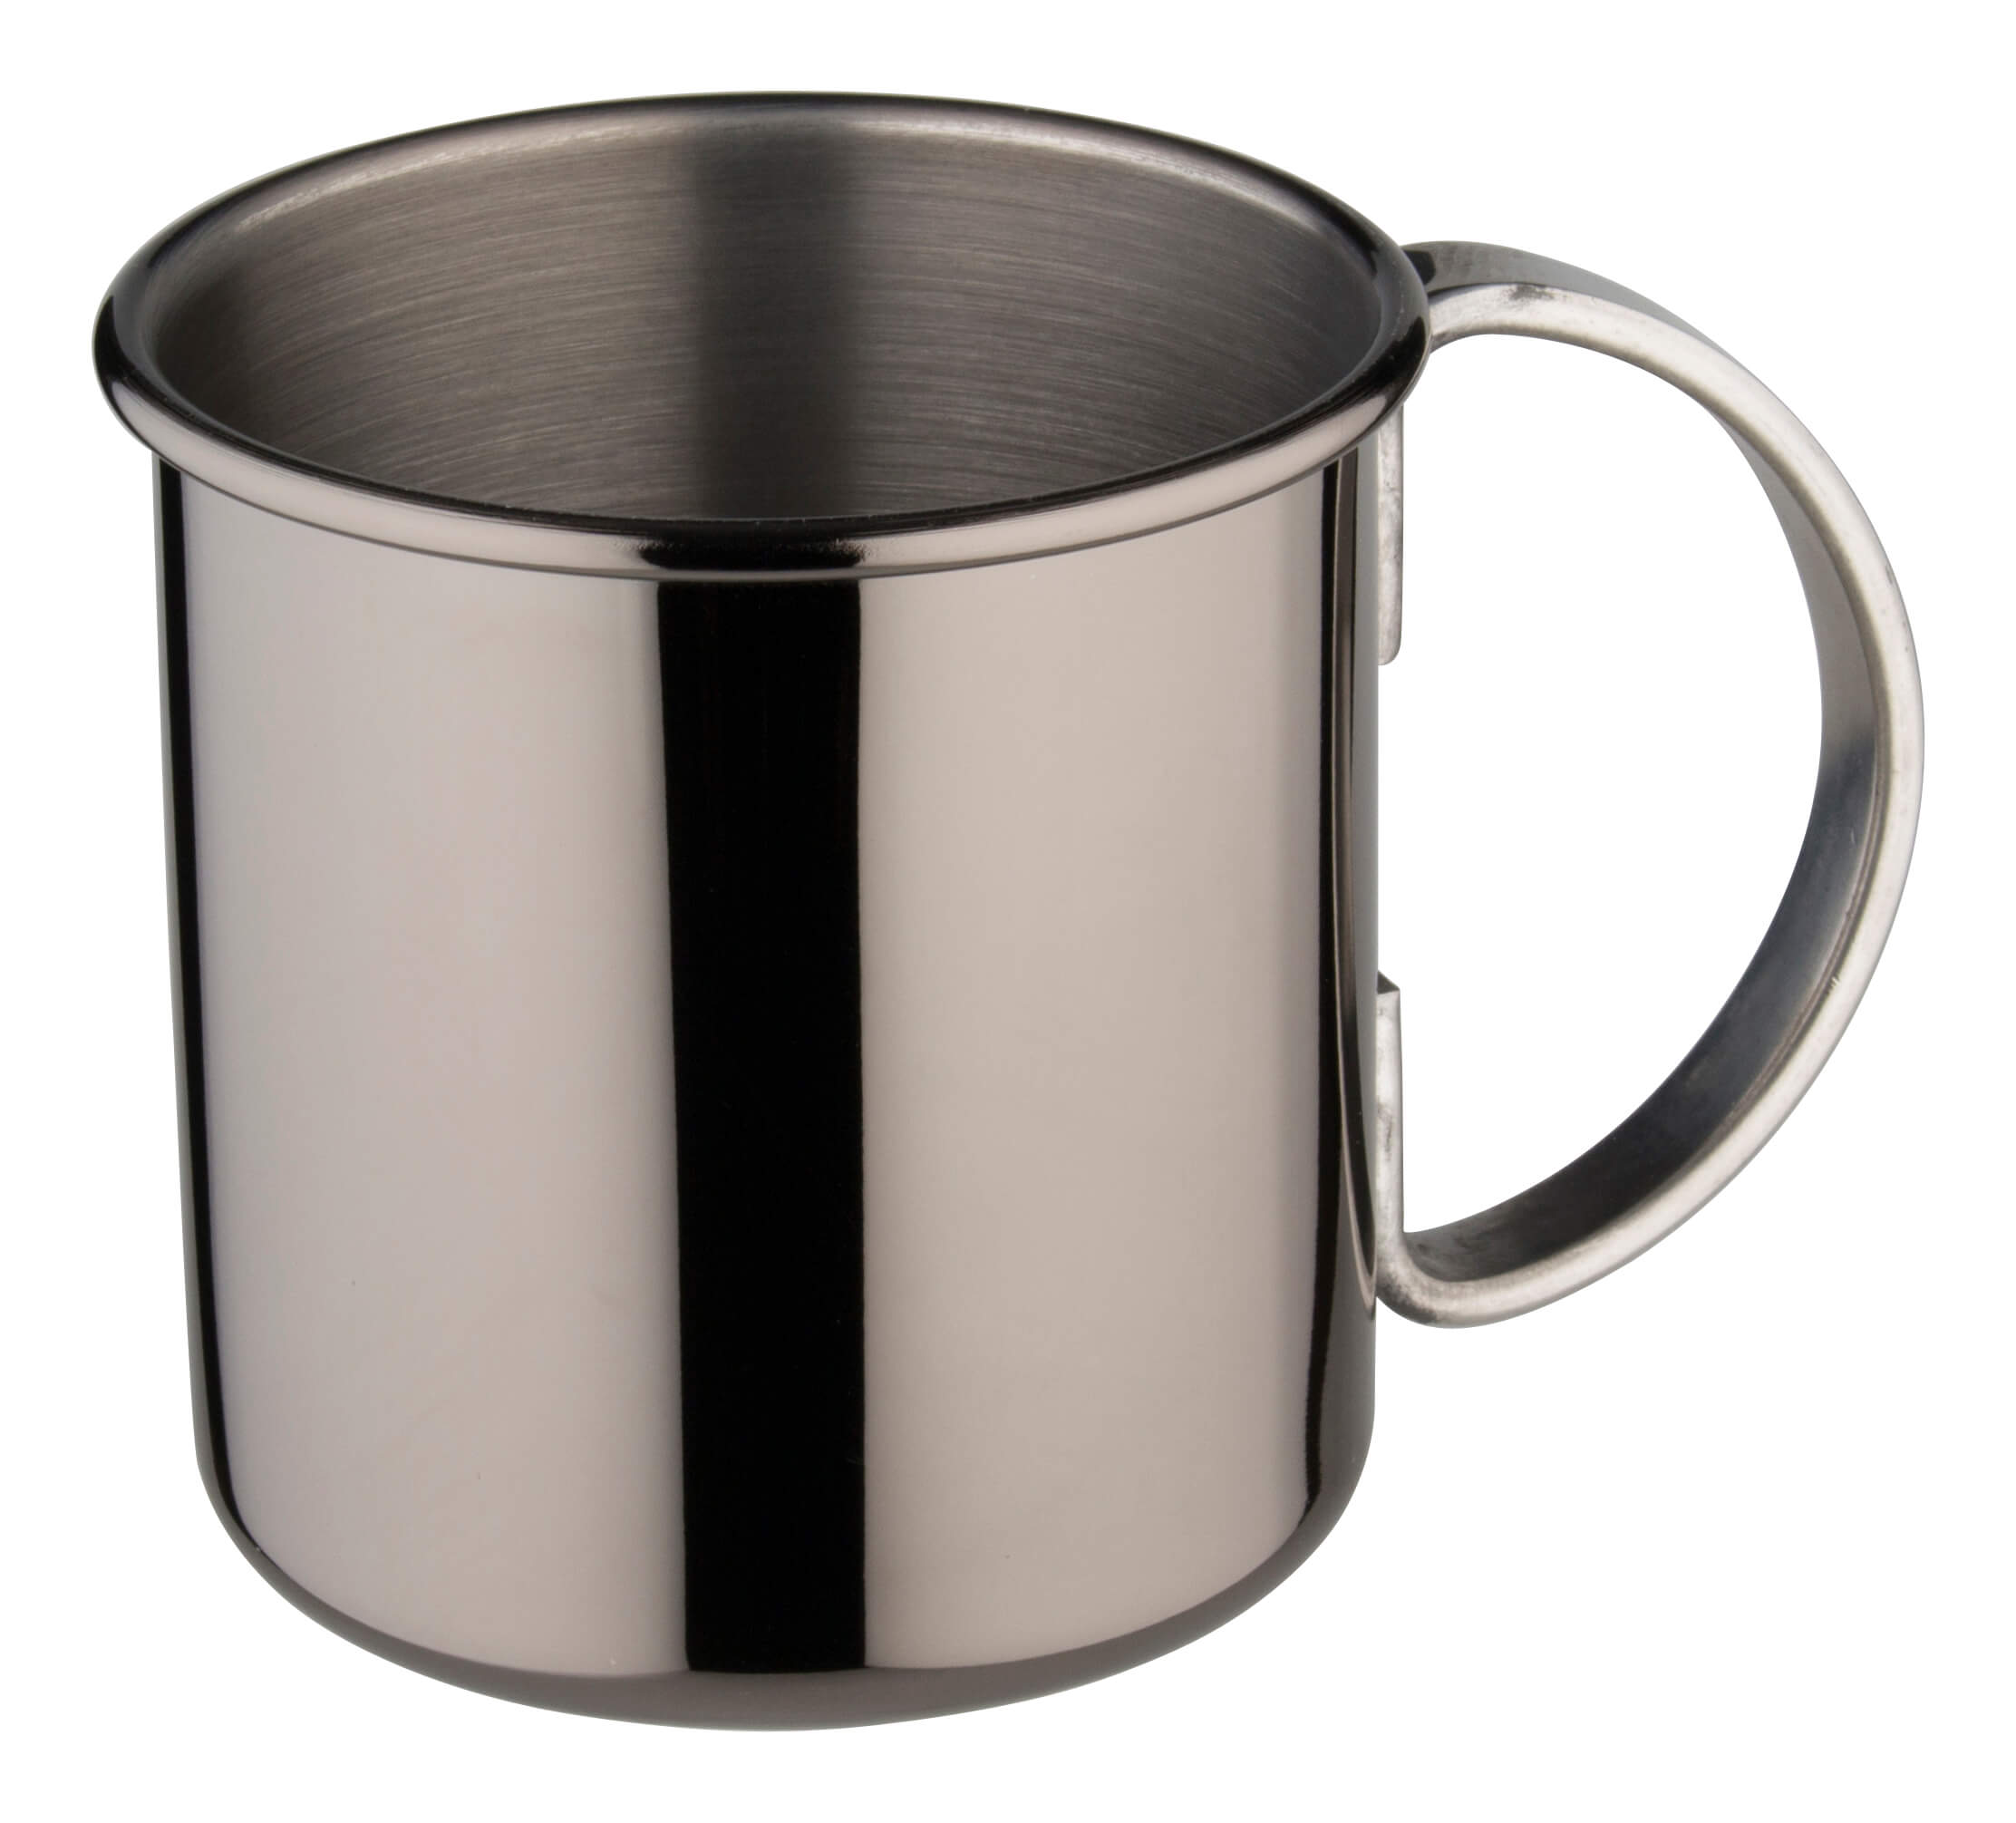 Moscow Mule mug, stainless steel, gunmetal black - 500ml